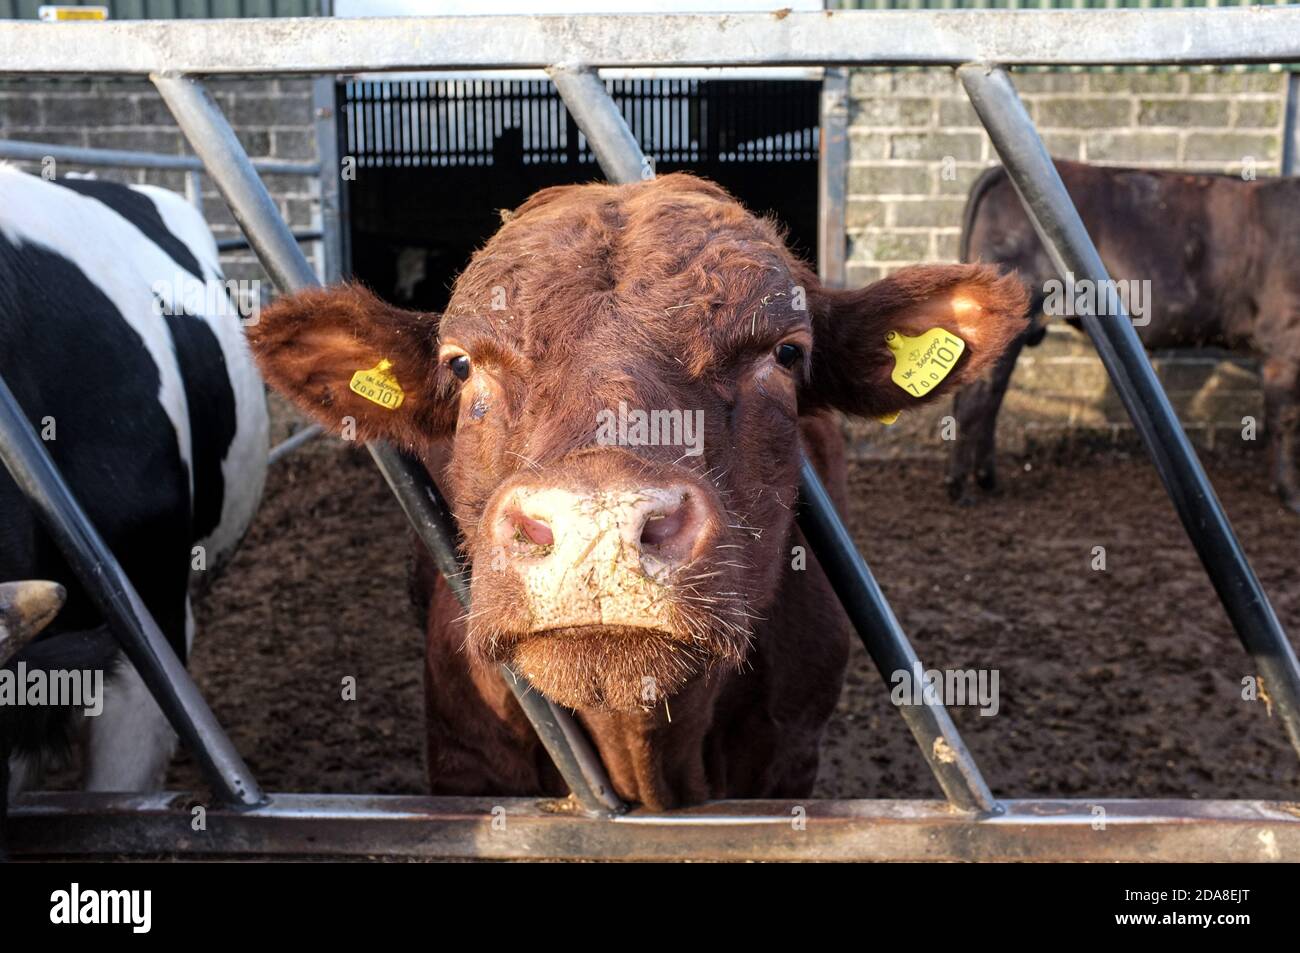 Vaca usando etiquetas en las orejas de pie con la cabeza entre las barras de la estación de alimentación con otro ganado mirando directamente en la cámara. Granja Yard Devon, Inglaterra. Foto de stock